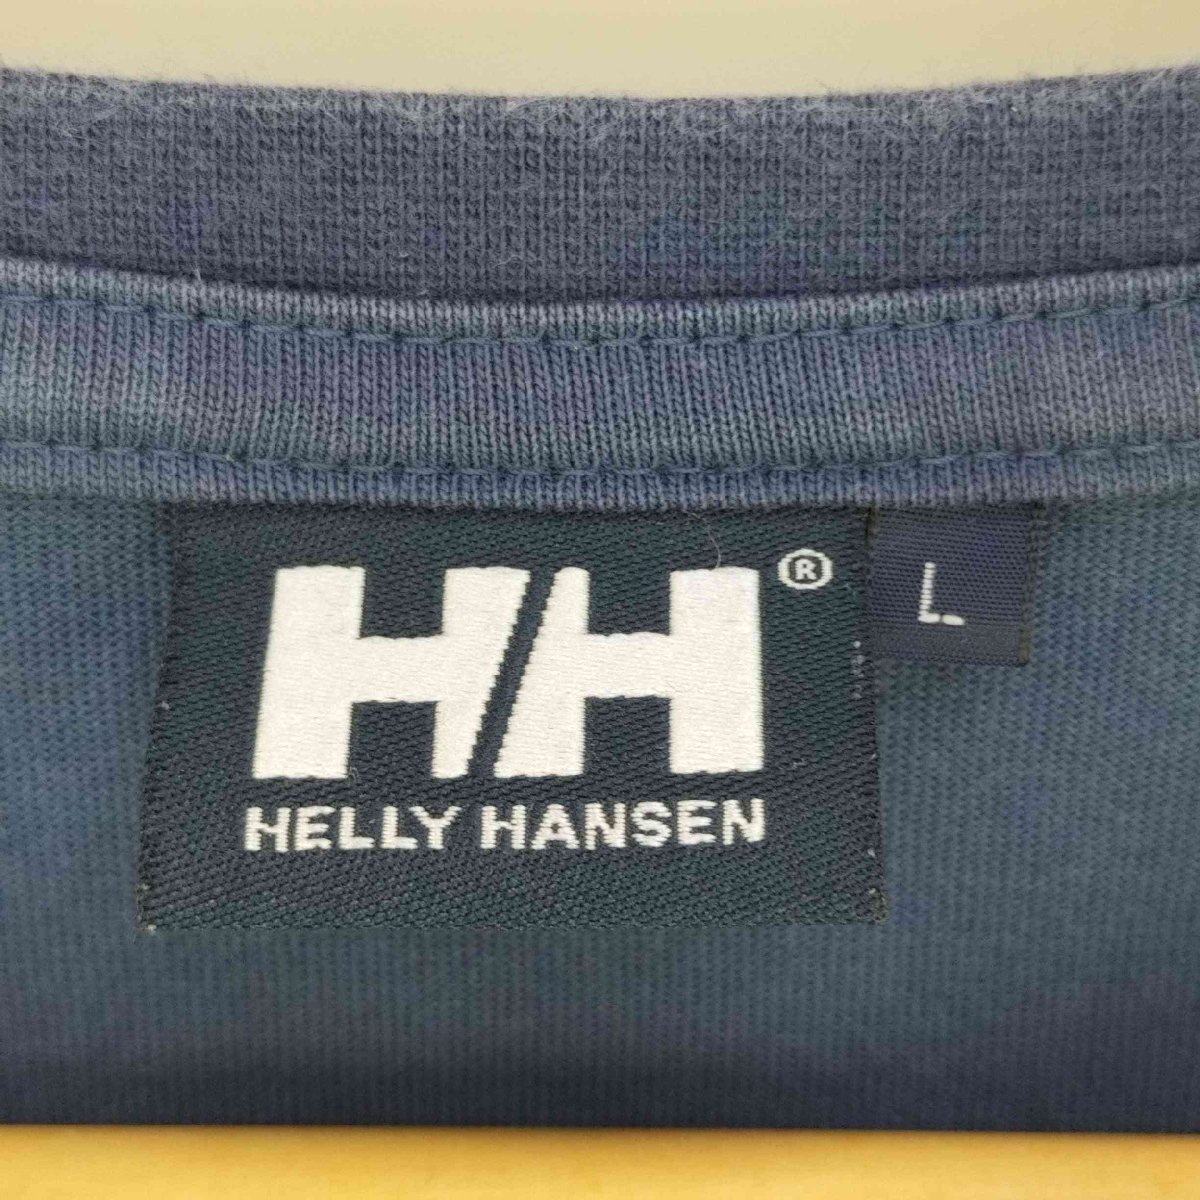 HELLY HANSEN(ヘリーハンセン) ホエールプリント クルーネックカットソー メンズ import 中古 古着 0613_画像6